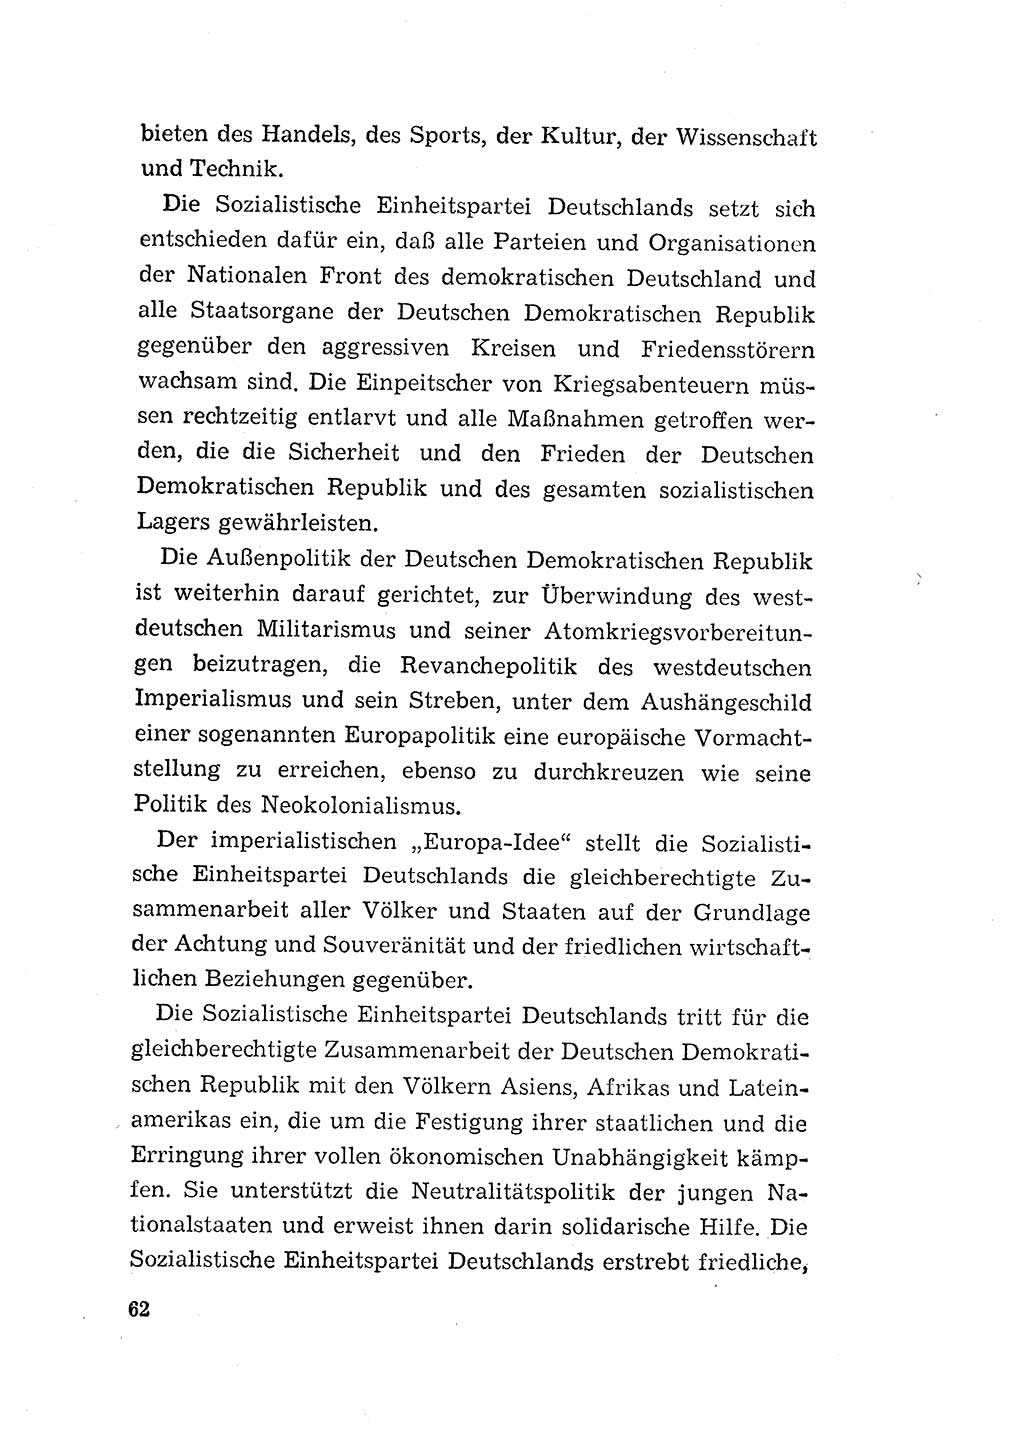 Programm der Sozialistischen Einheitspartei Deutschlands (SED) [Deutsche Demokratische Republik (DDR)] 1963, Seite 62 (Progr. SED DDR 1963, S. 62)